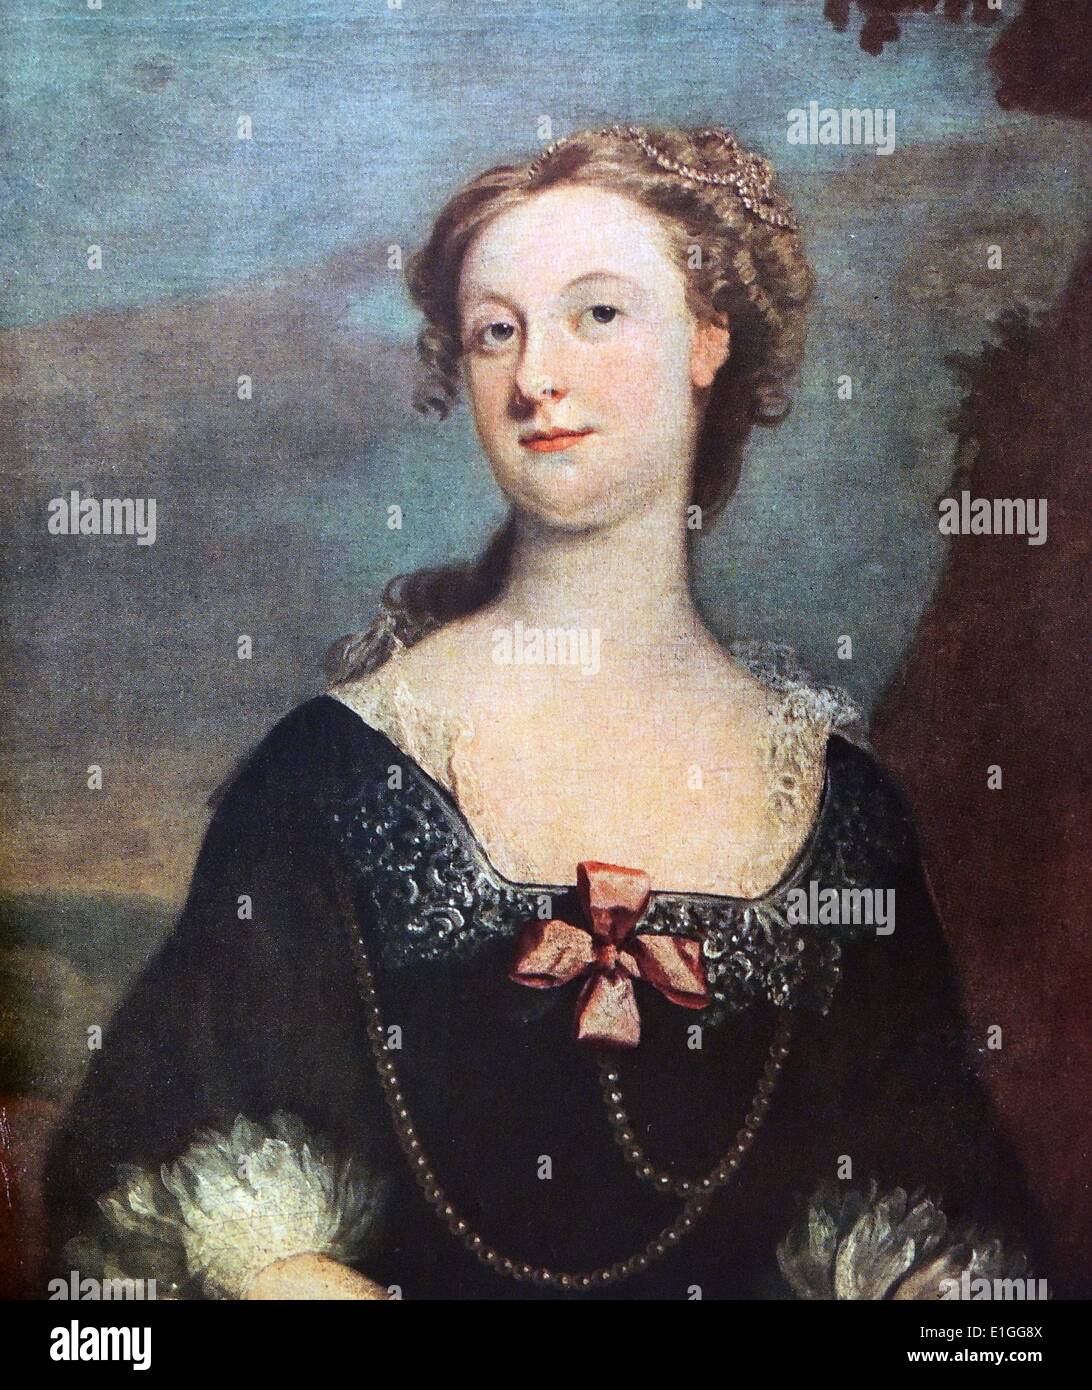 Portrait de Mary Rossam. Peinture à l'huile de Marie Rossam. Par Joseph Highmore (1692 - 1780) un portrait anglais et peintre historique. Datée 1734 Banque D'Images